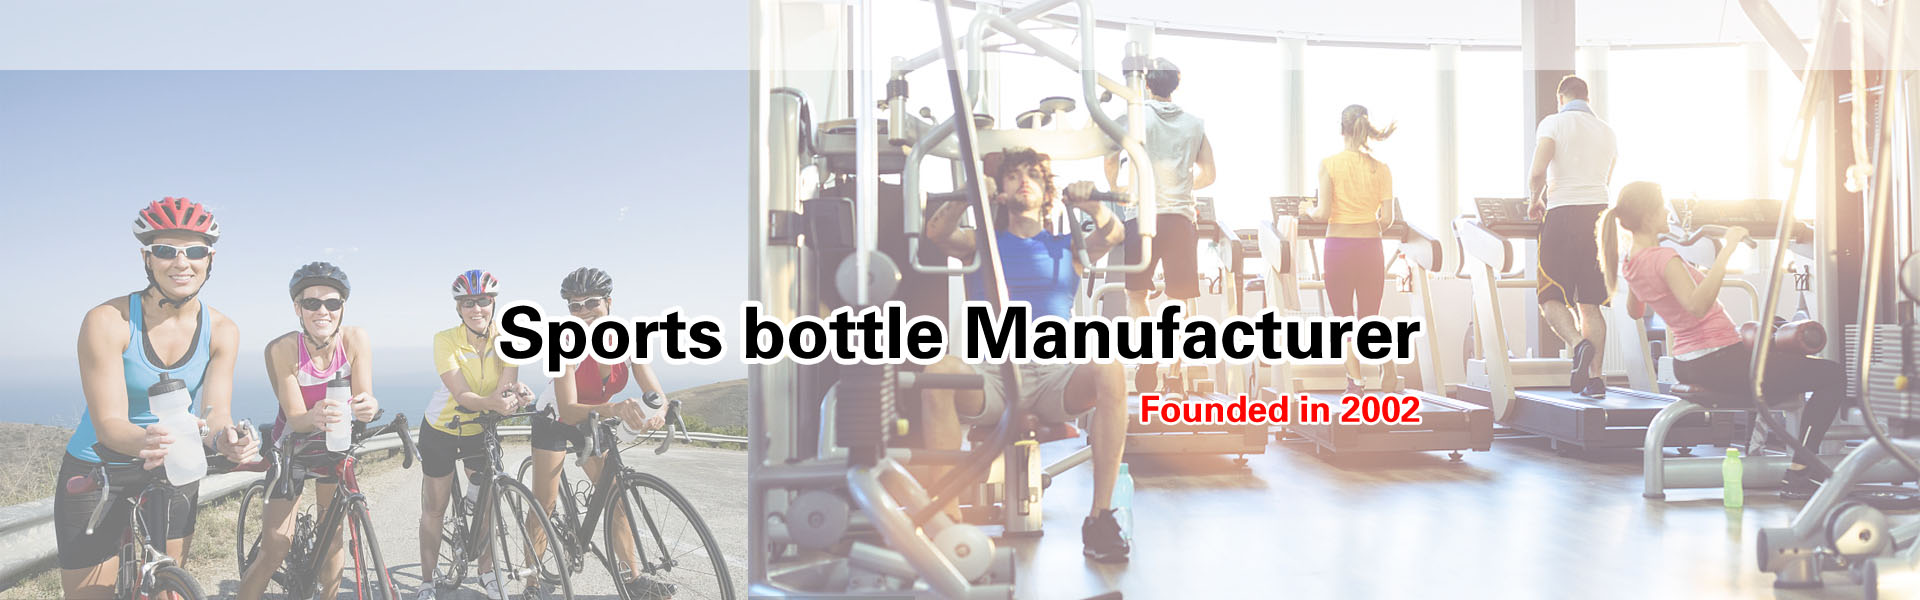 Sports bottle Manufacturer